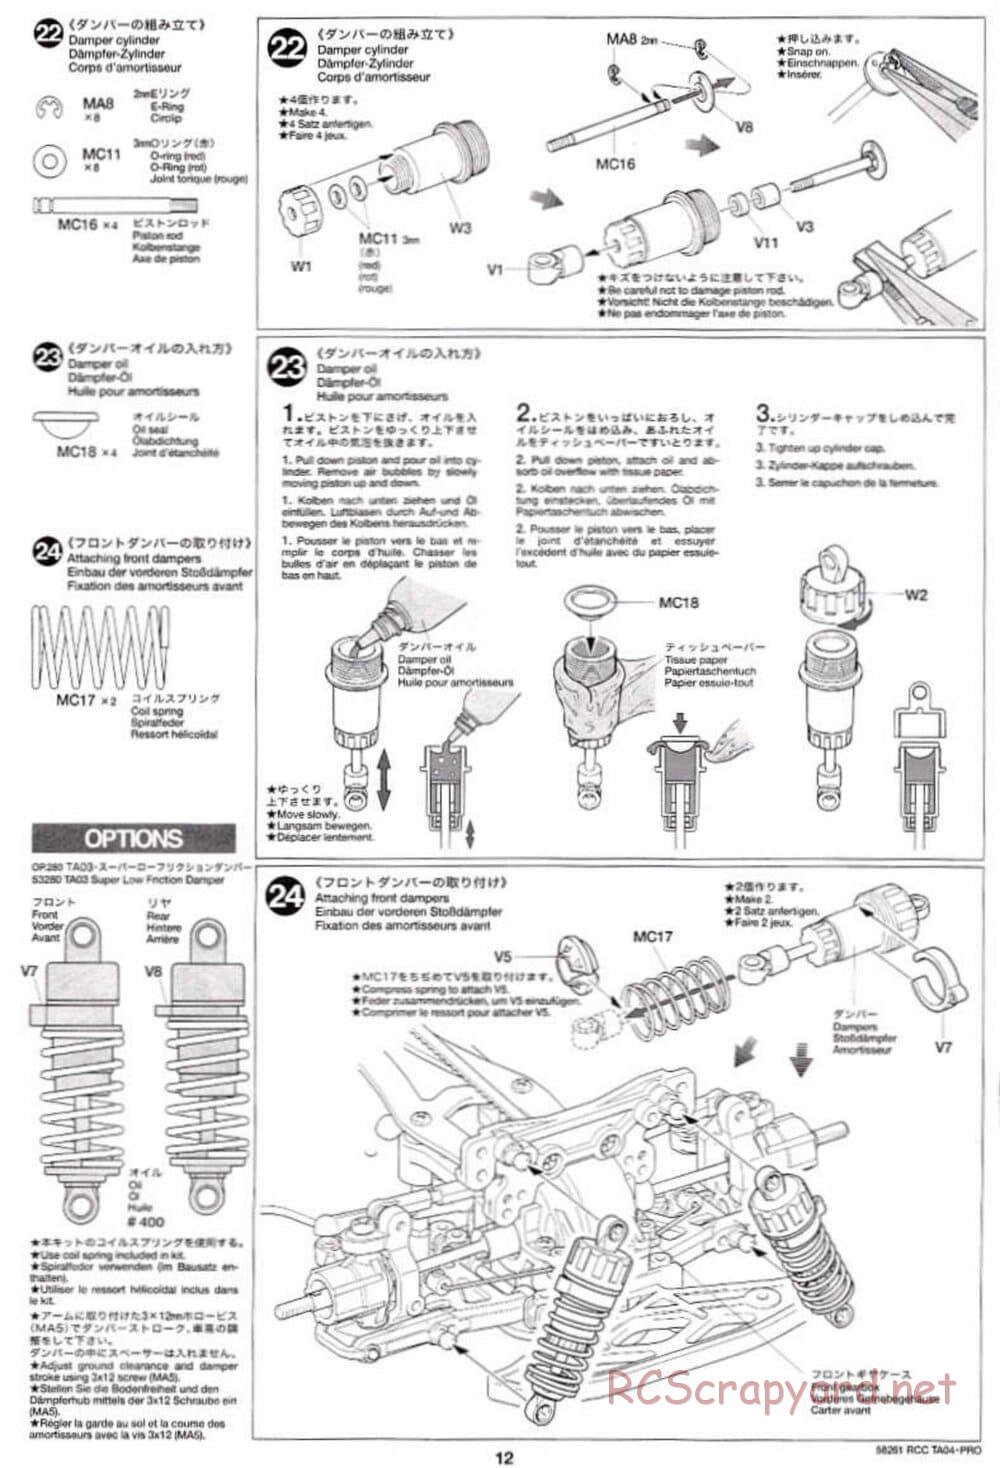 Tamiya - TA-04 Pro Chassis - Manual - Page 12